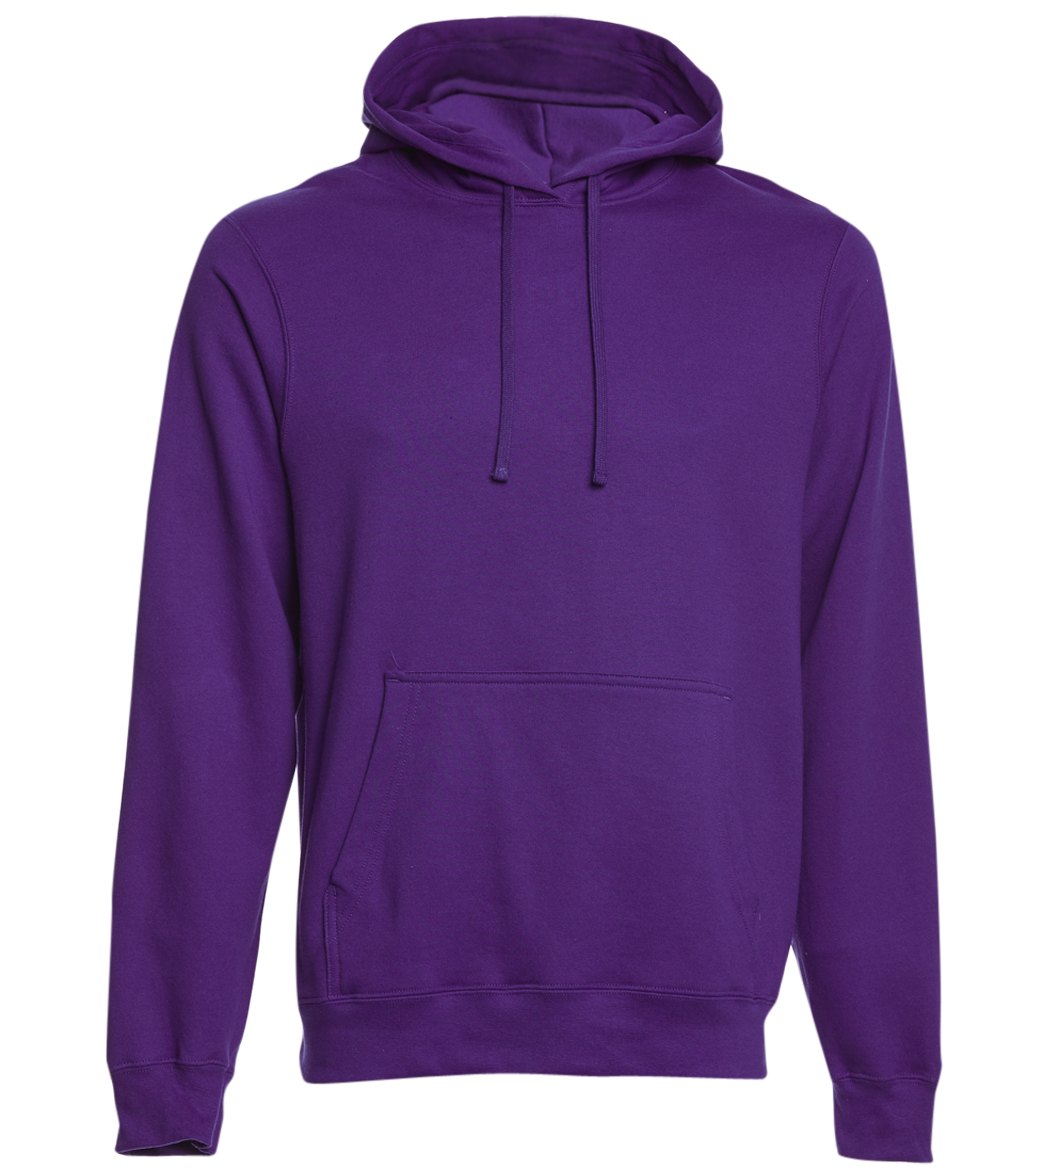 Men's Fan Favorite Fleece Pullover Hooded Sweatshirt - Team Purple 3Xl Cotton/Polyester - Swimoutlet.com